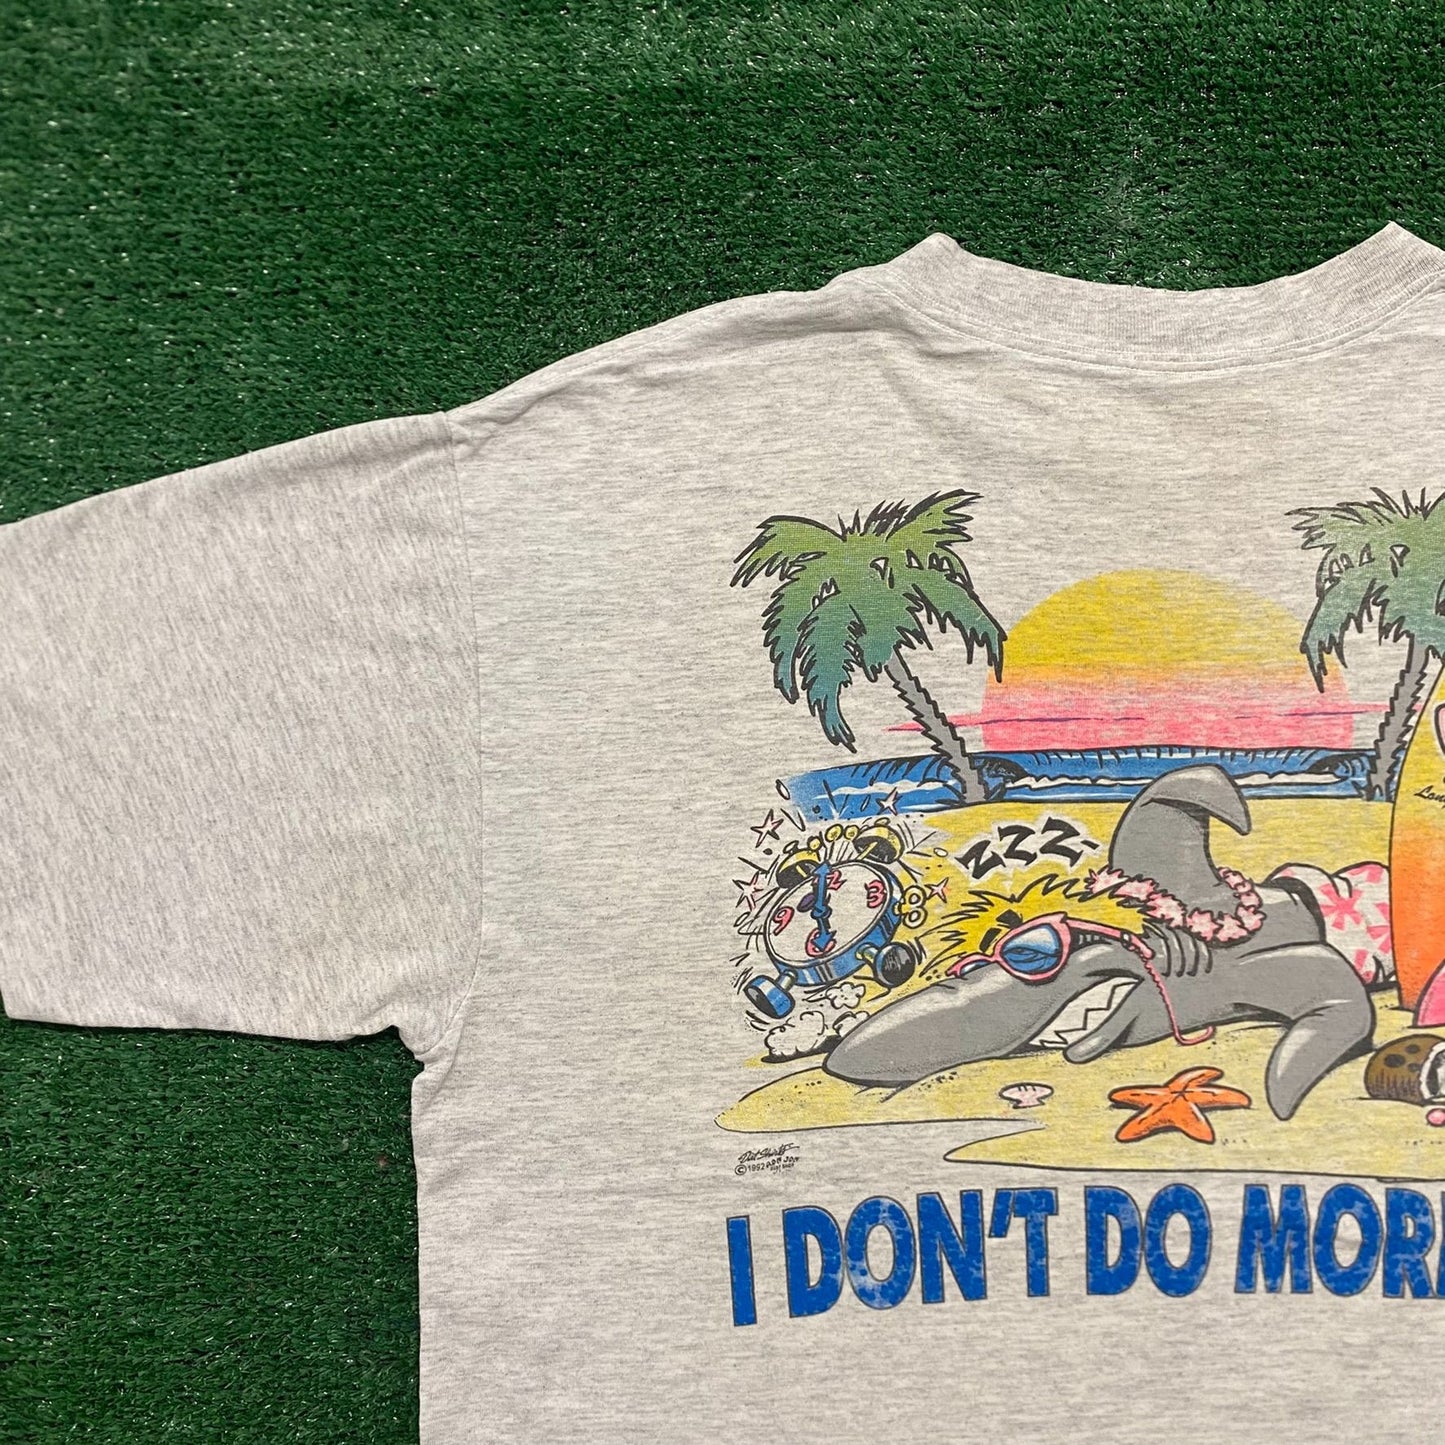 Vintage 90s Ron Jon Surf Shop Single Stitch Baggy T-Shirt